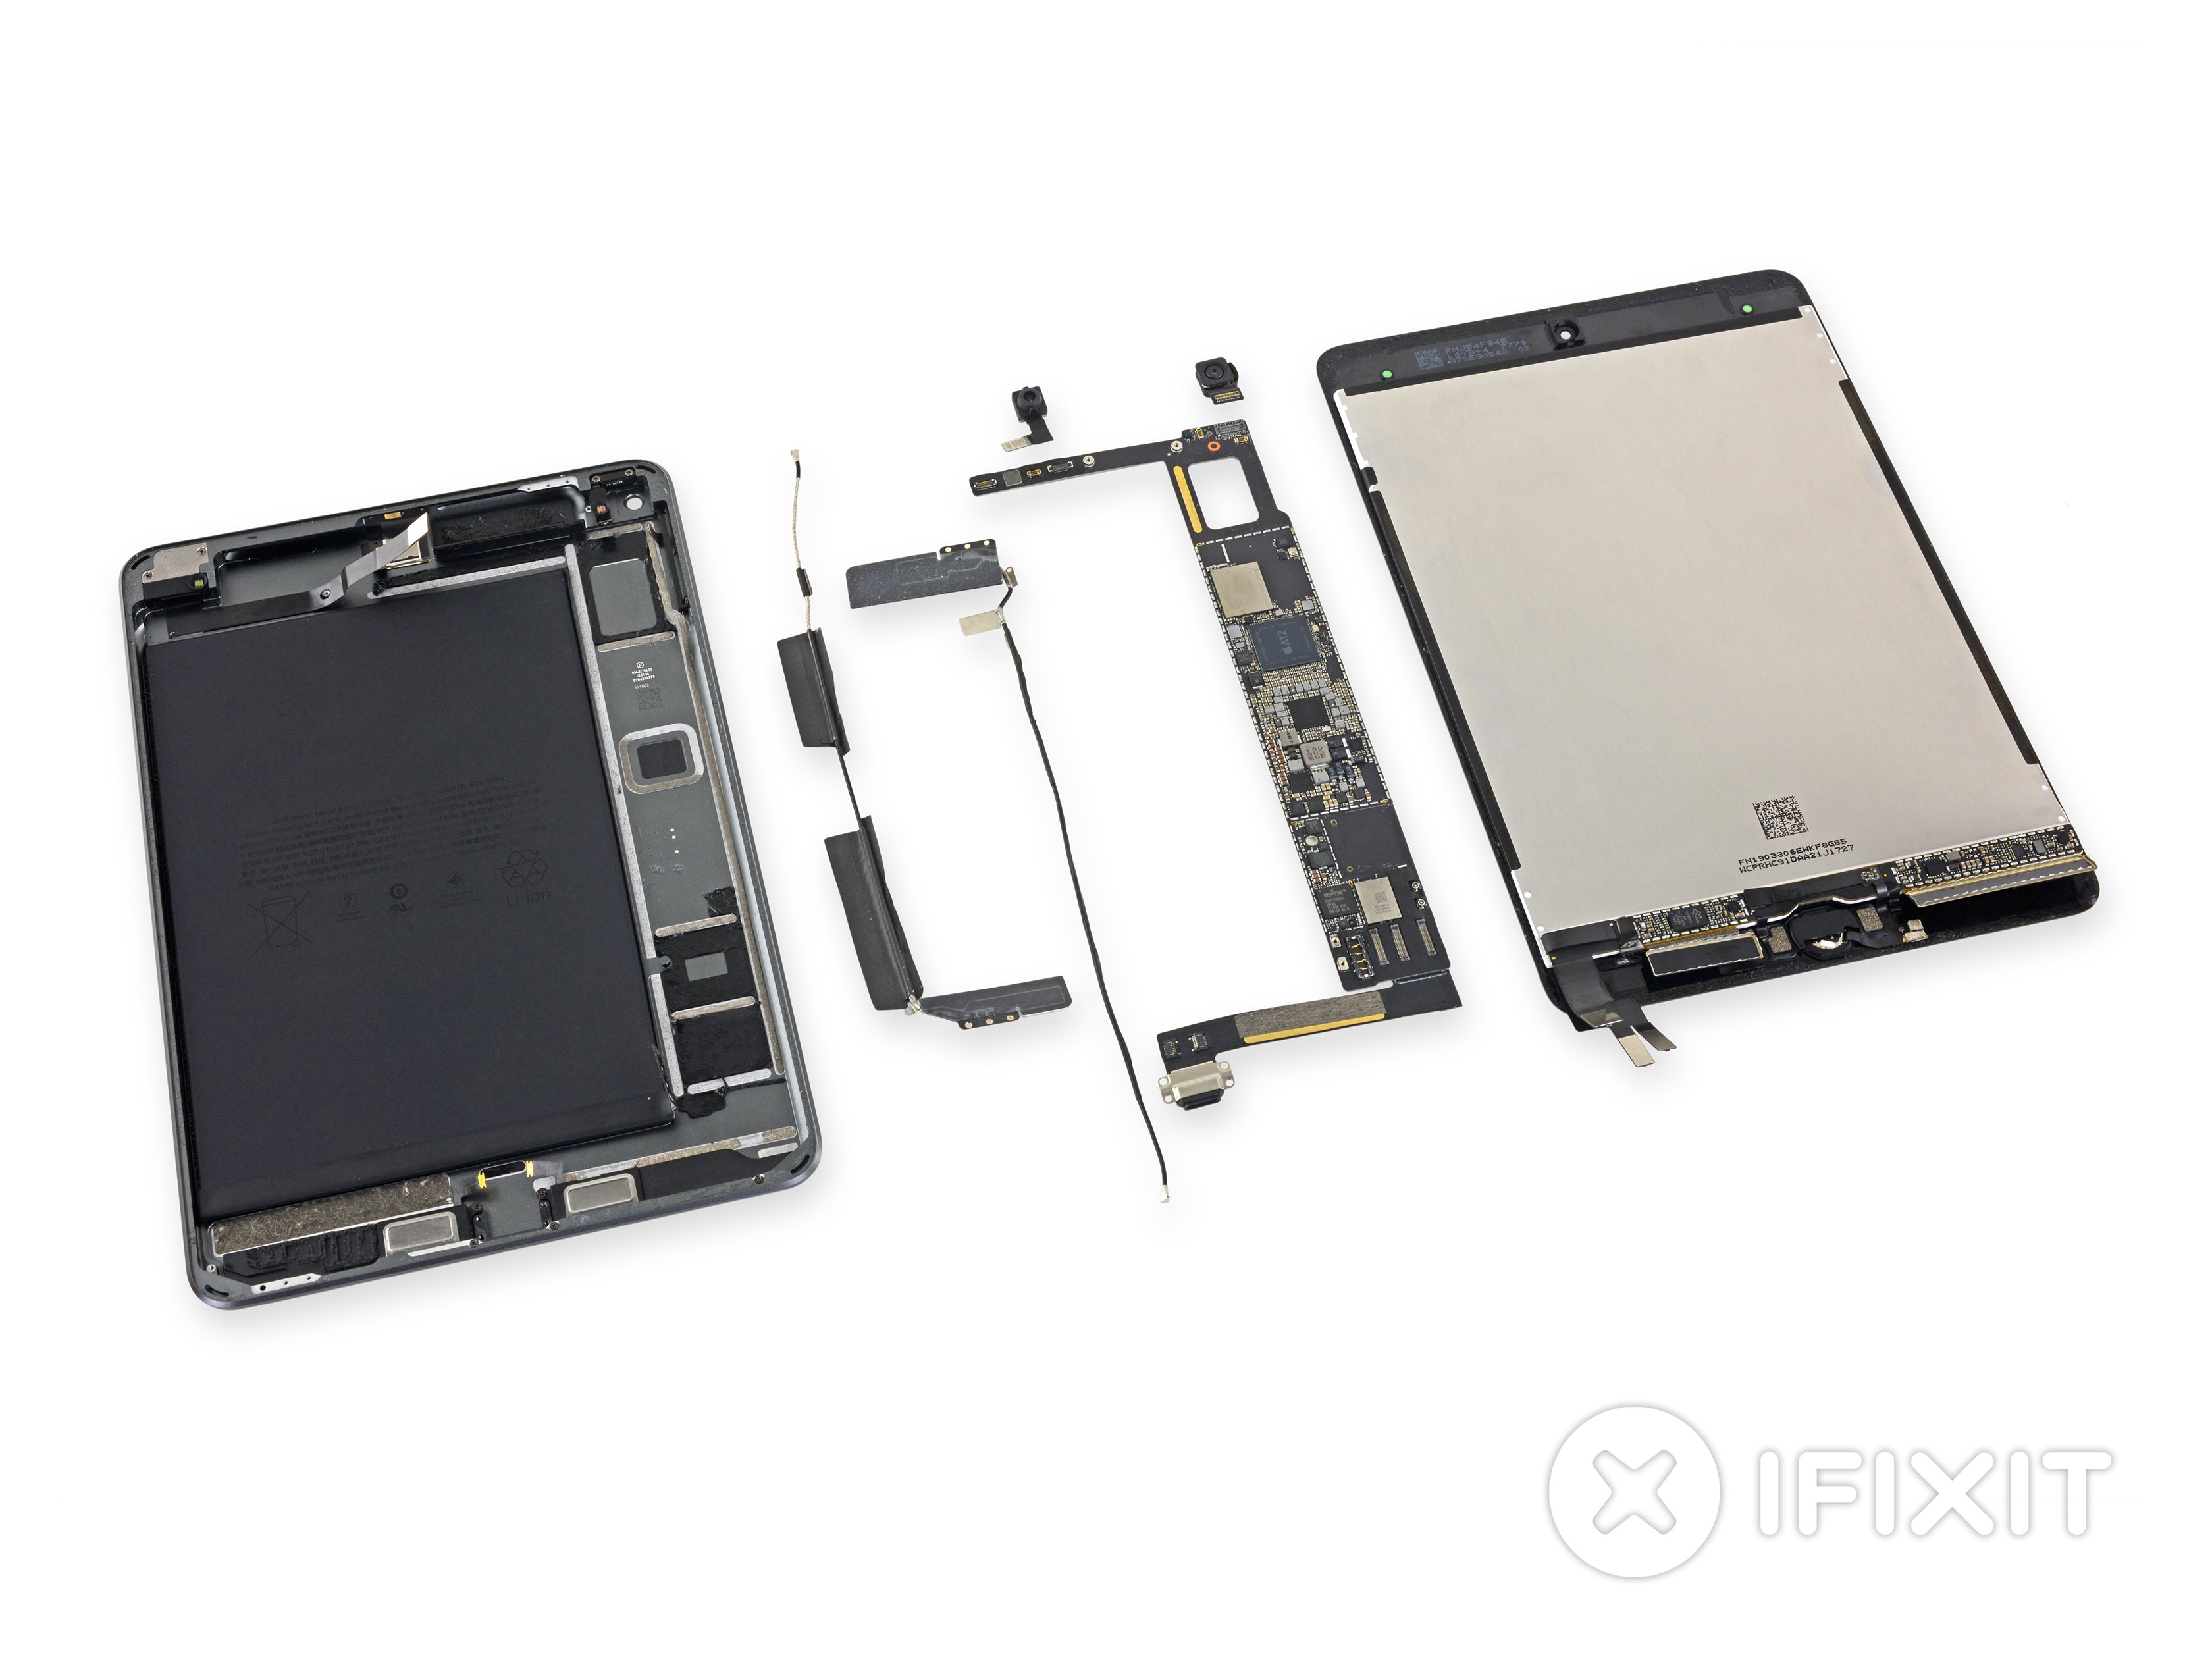 Desmontagem do iPad mini de quinta geração pela iFixit